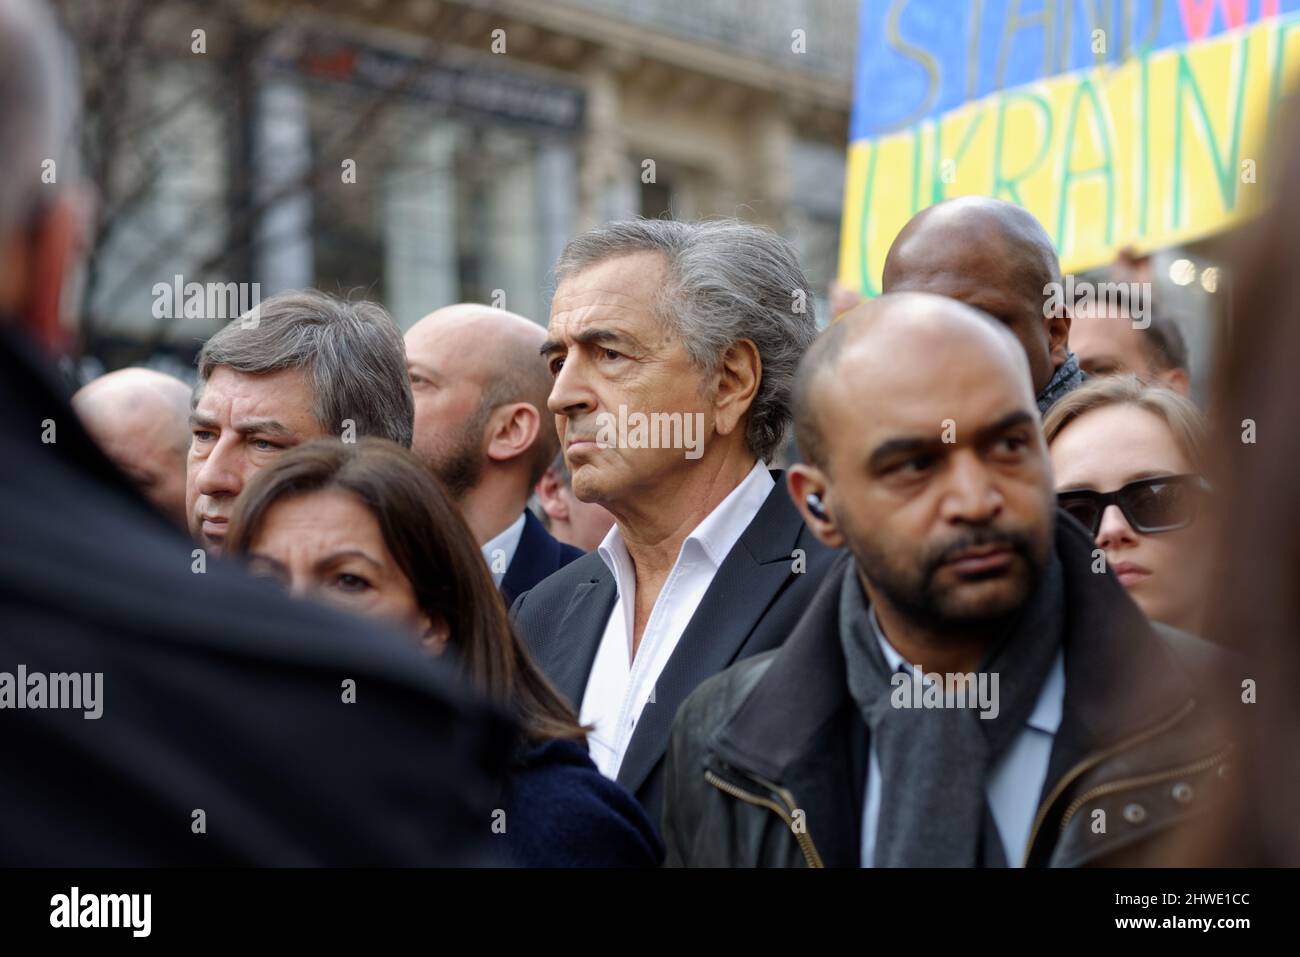 Grande mobilisation à Paris contre la guerre à Ukrain de nombreux politiciens de gauche et de droite étaient en cortège, y compris le maire de Paris Banque D'Images